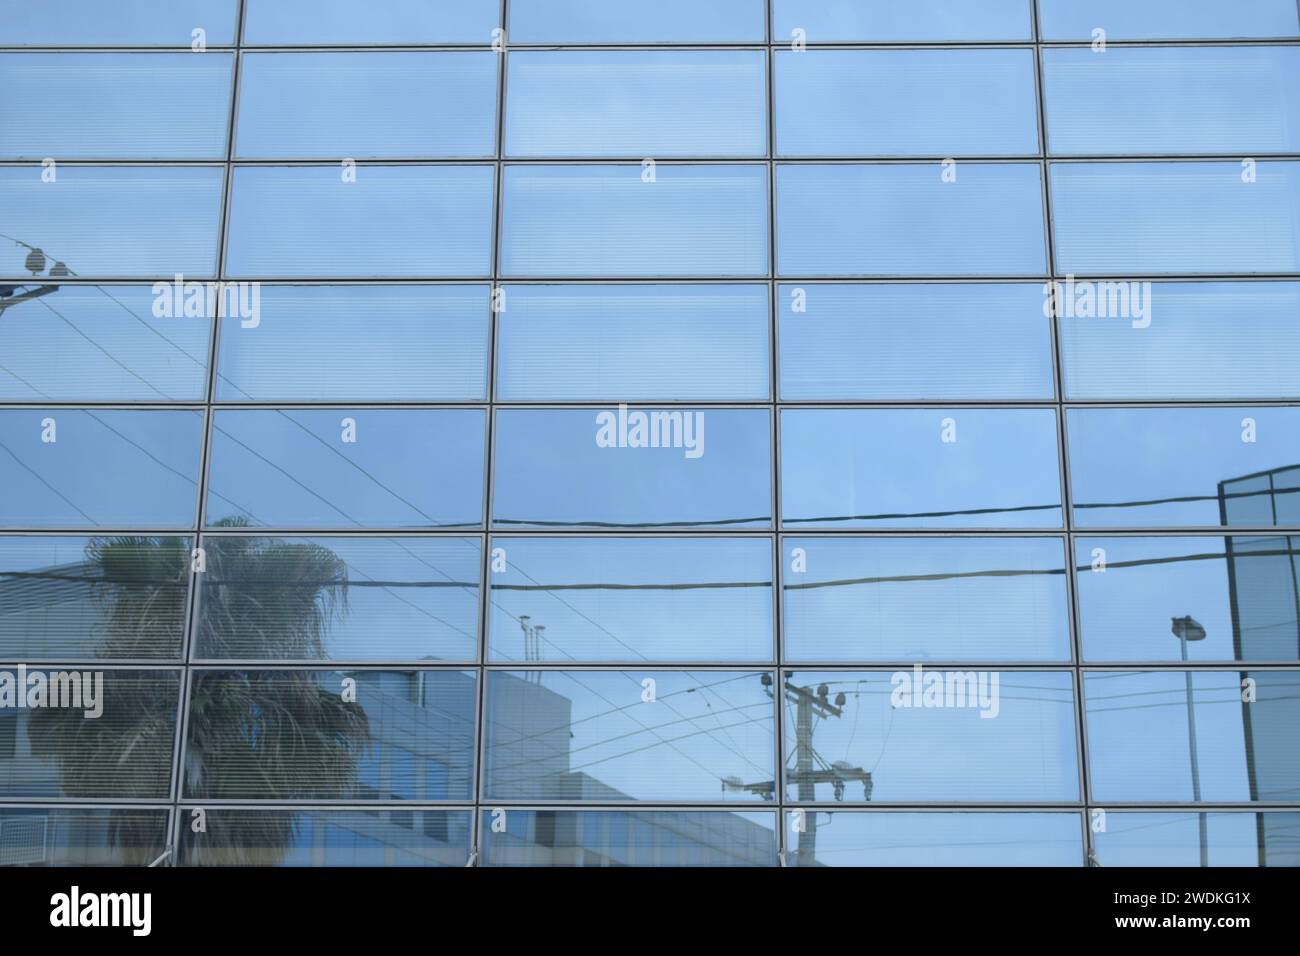 Paisaje urbano distorsionado reflejado en la fachada de cristal de un edificio moderno. Fondo abstracto de las ventanas. Foto de stock